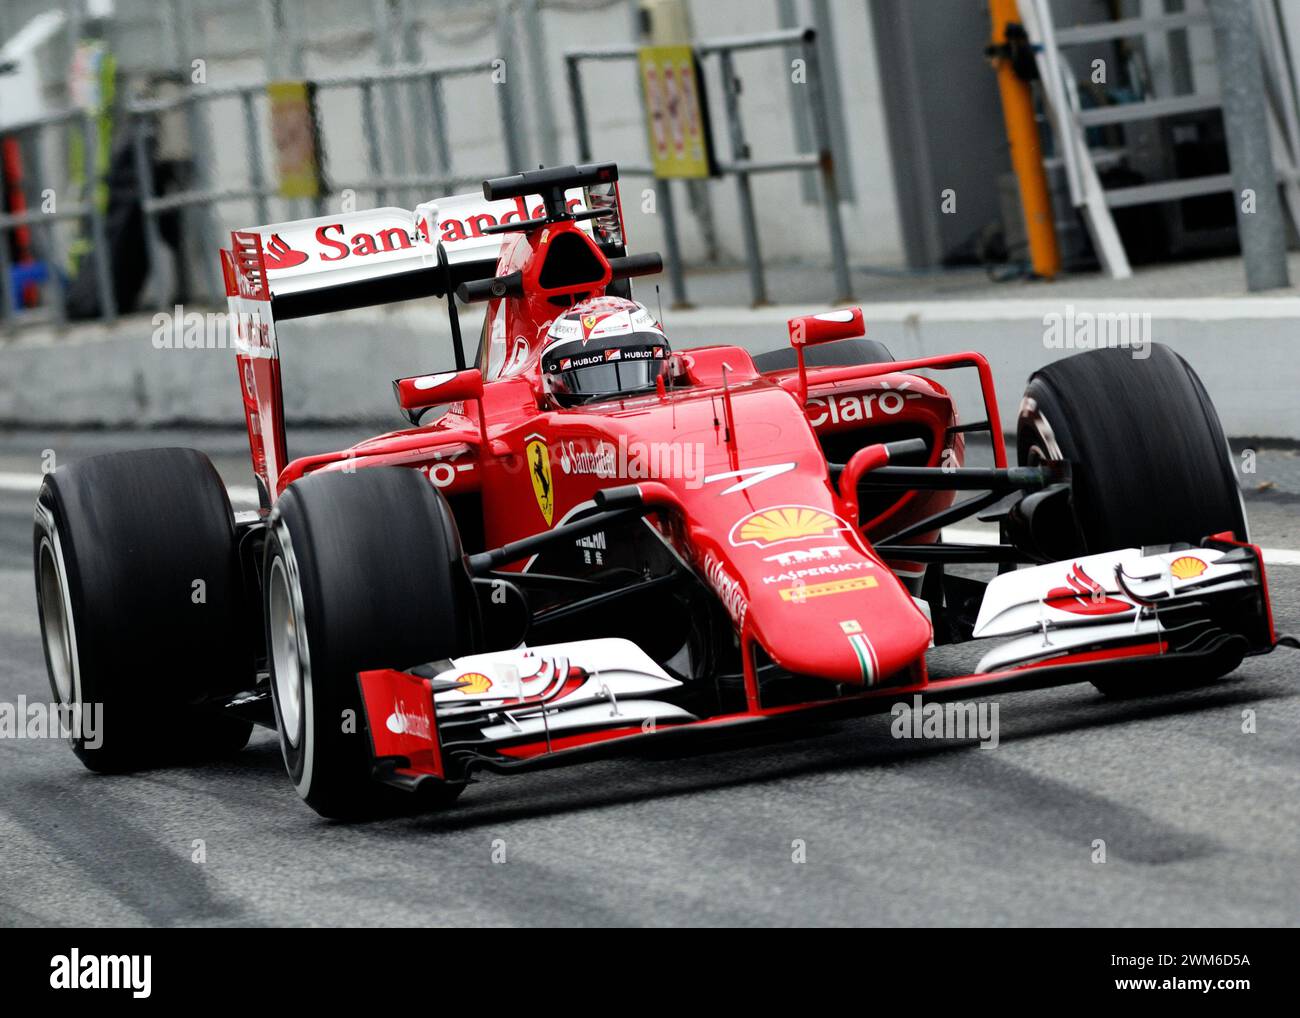 kimi raikkonen - Catalunya - Ferrari Stock Photo